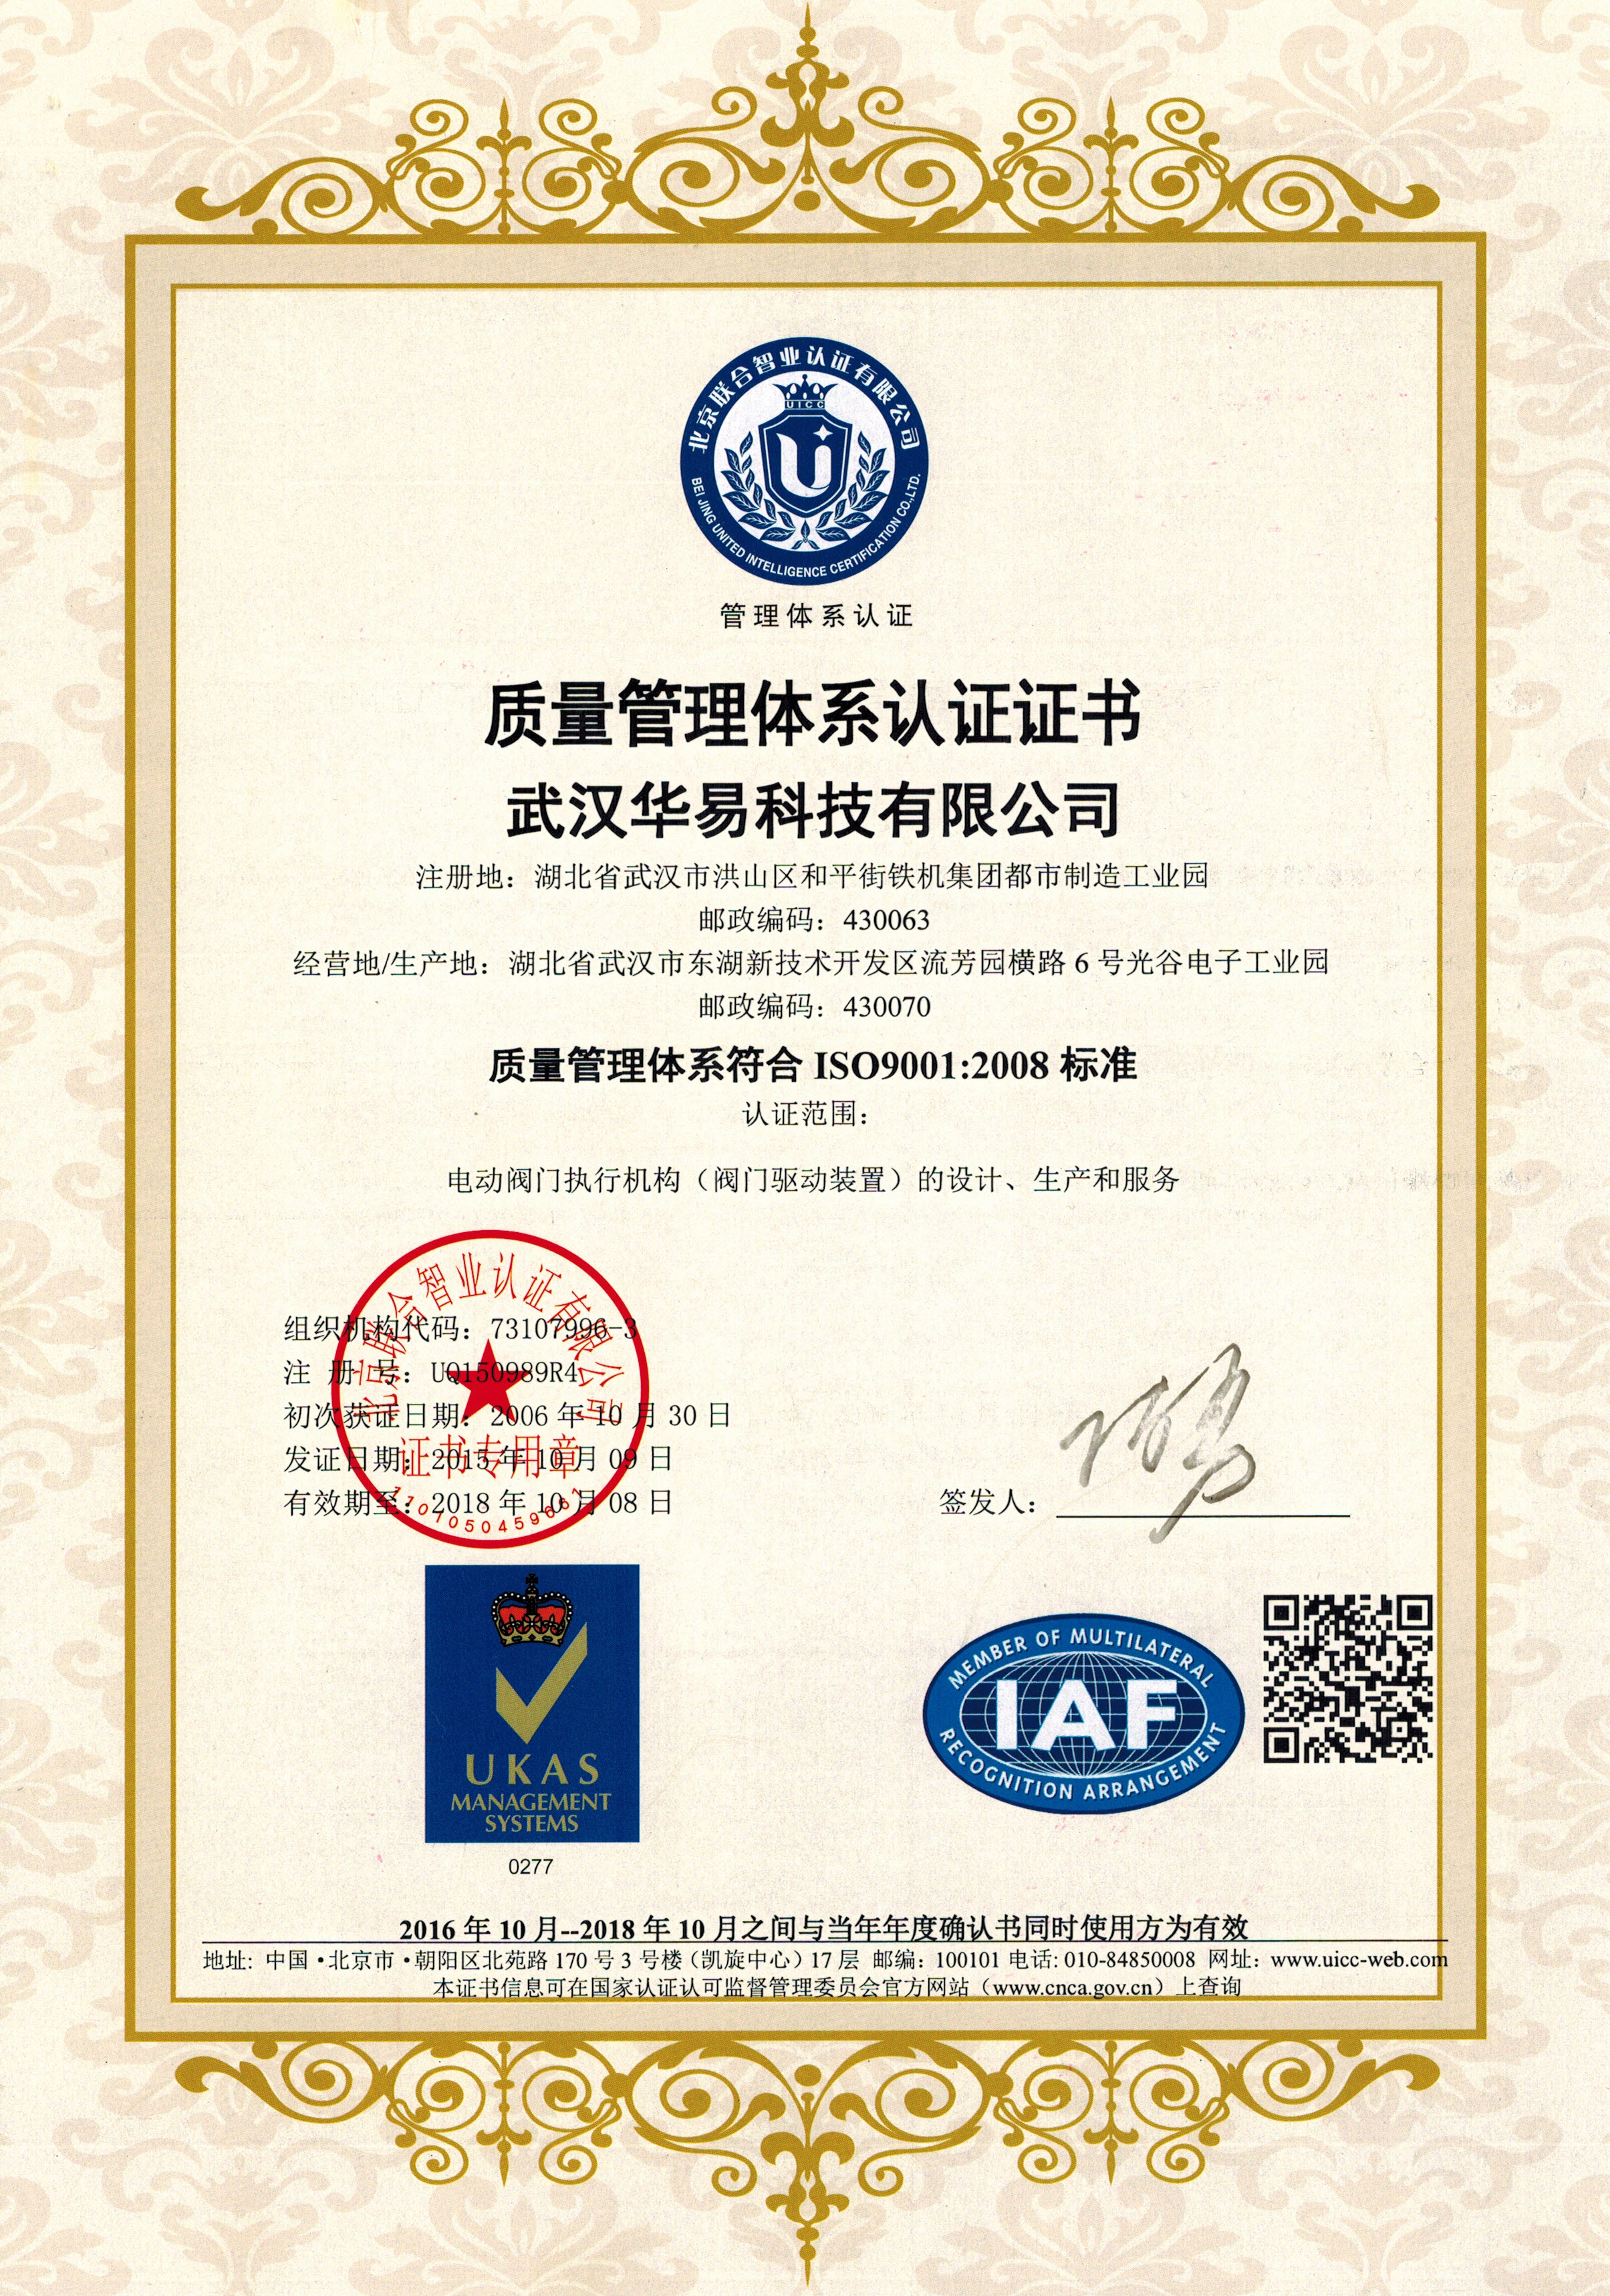 2003年10月：通过ISO9001-2000国际质量管理体系认证;